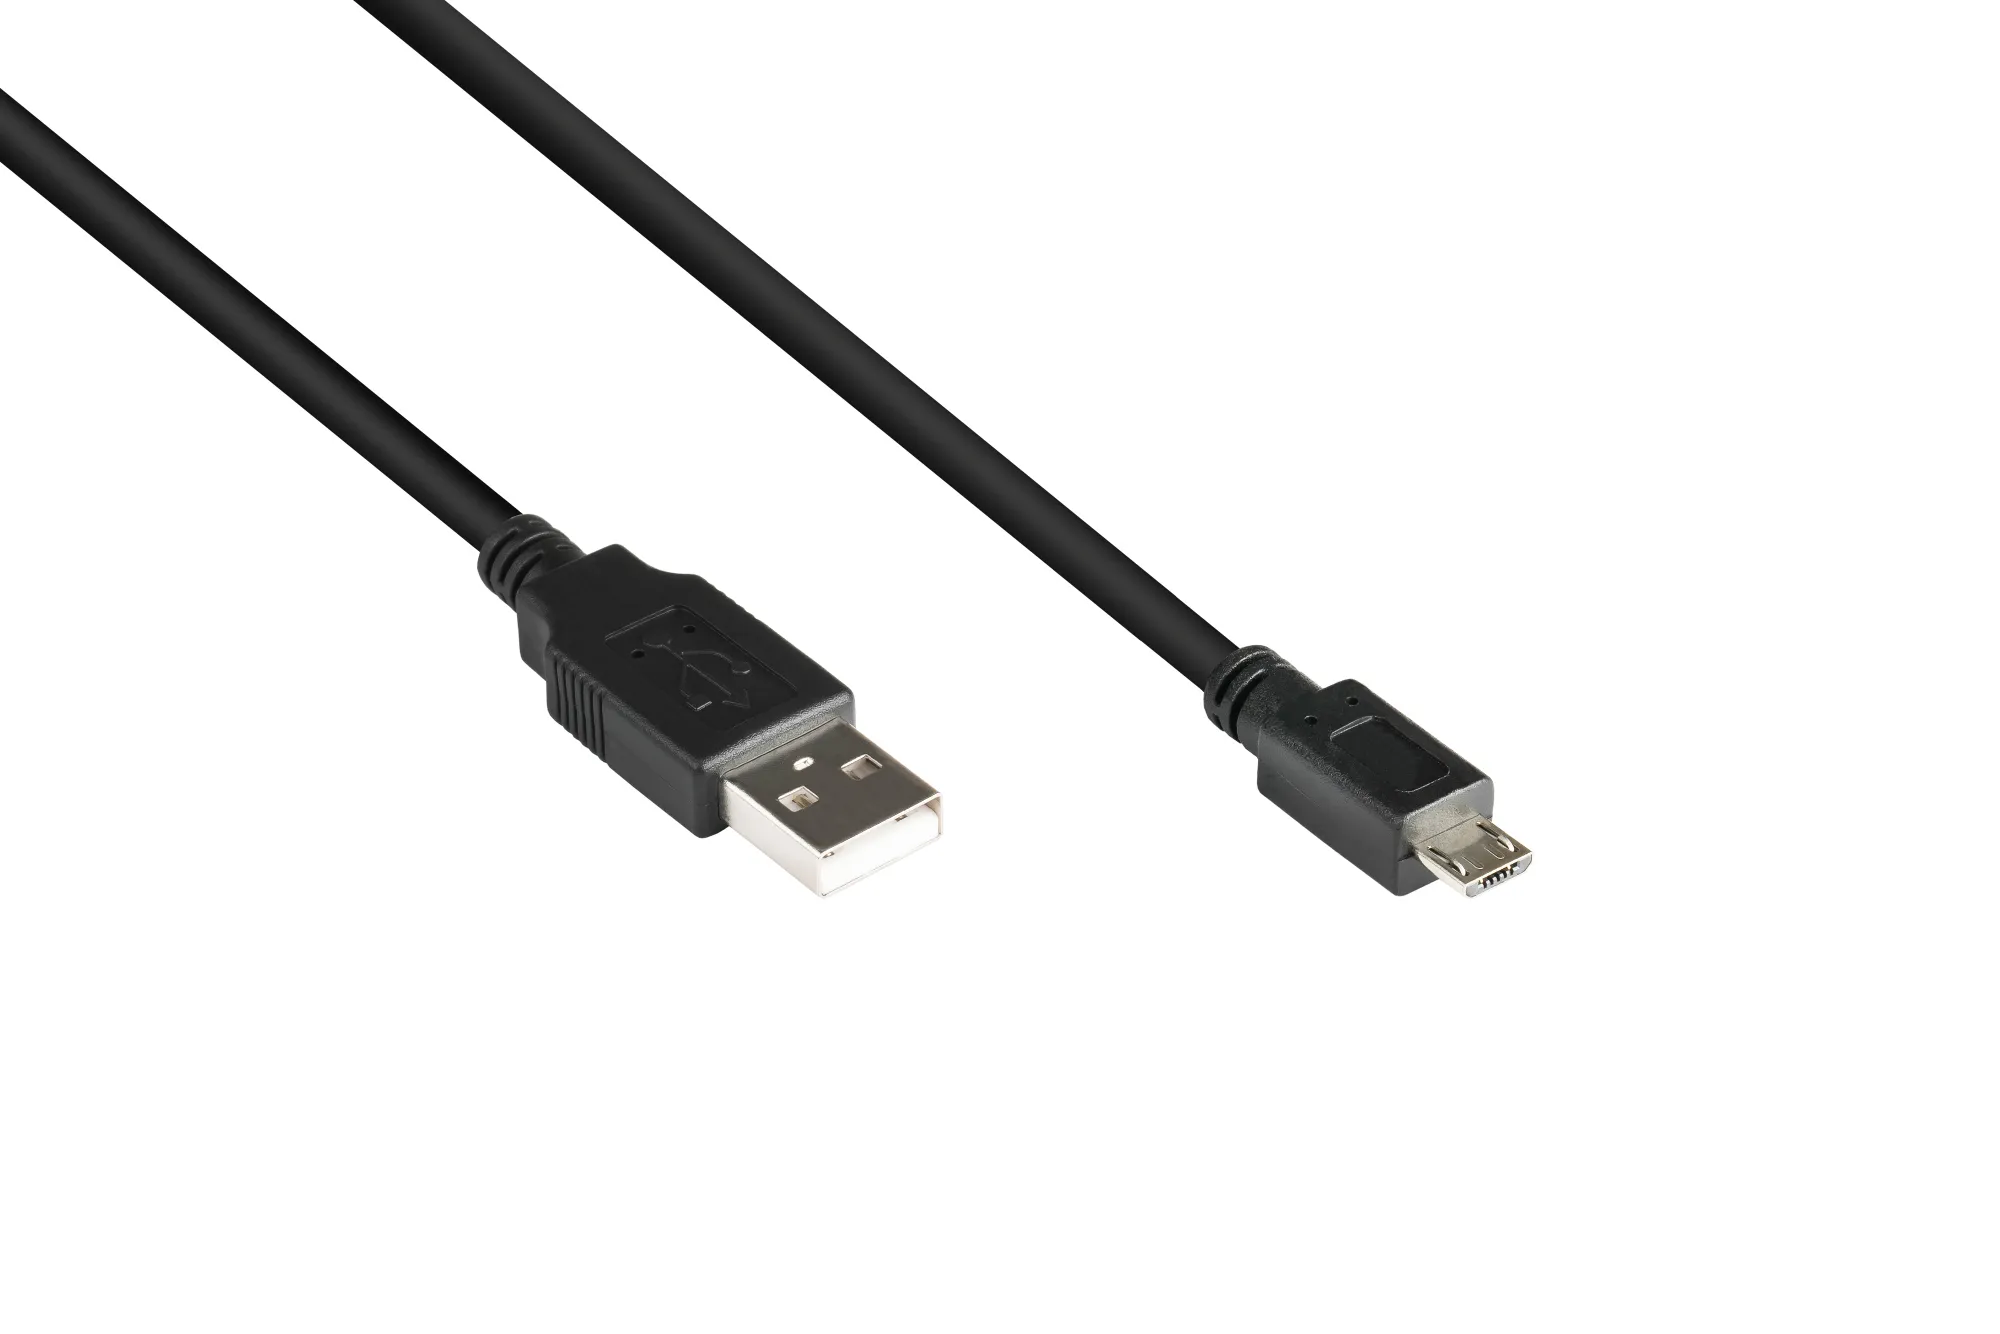 Anschlusskabel USB 2.0 Stecker A an Stecker Micro B, schwarz, 0,3m, Good Connections®